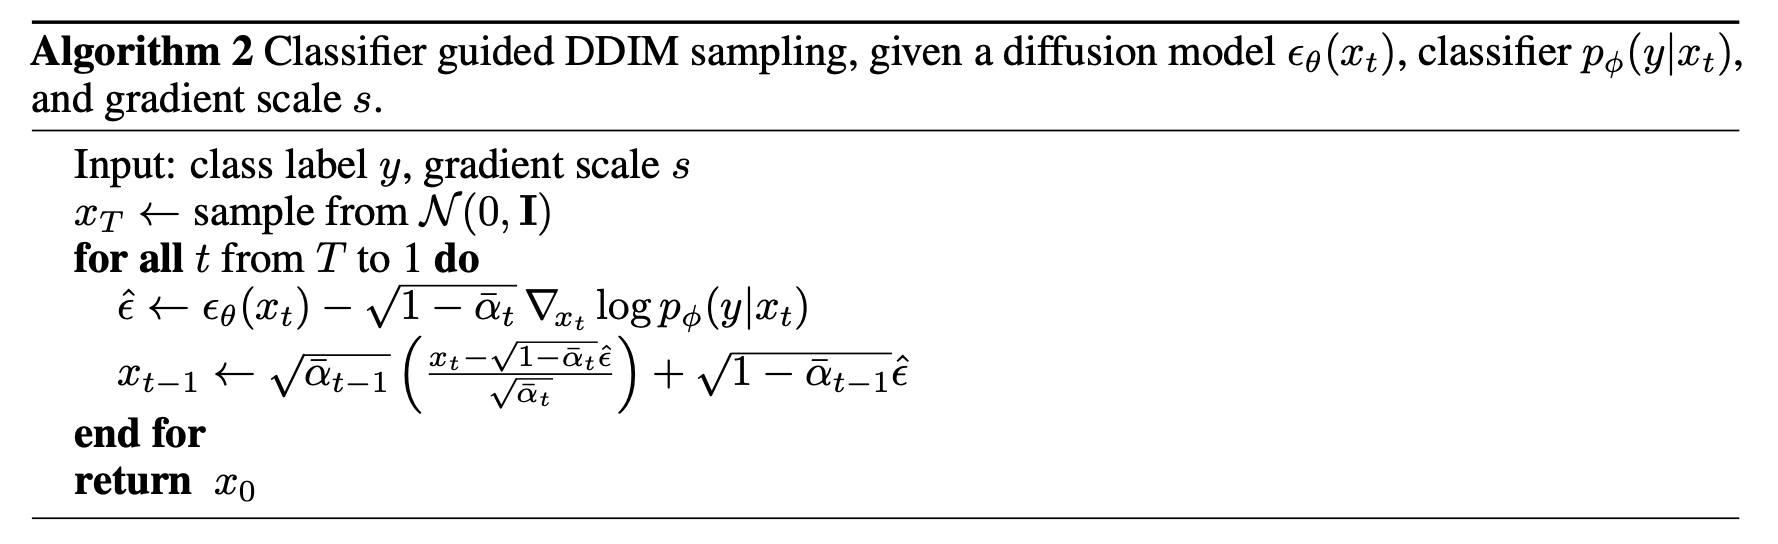 class_diffusion_algorithm2